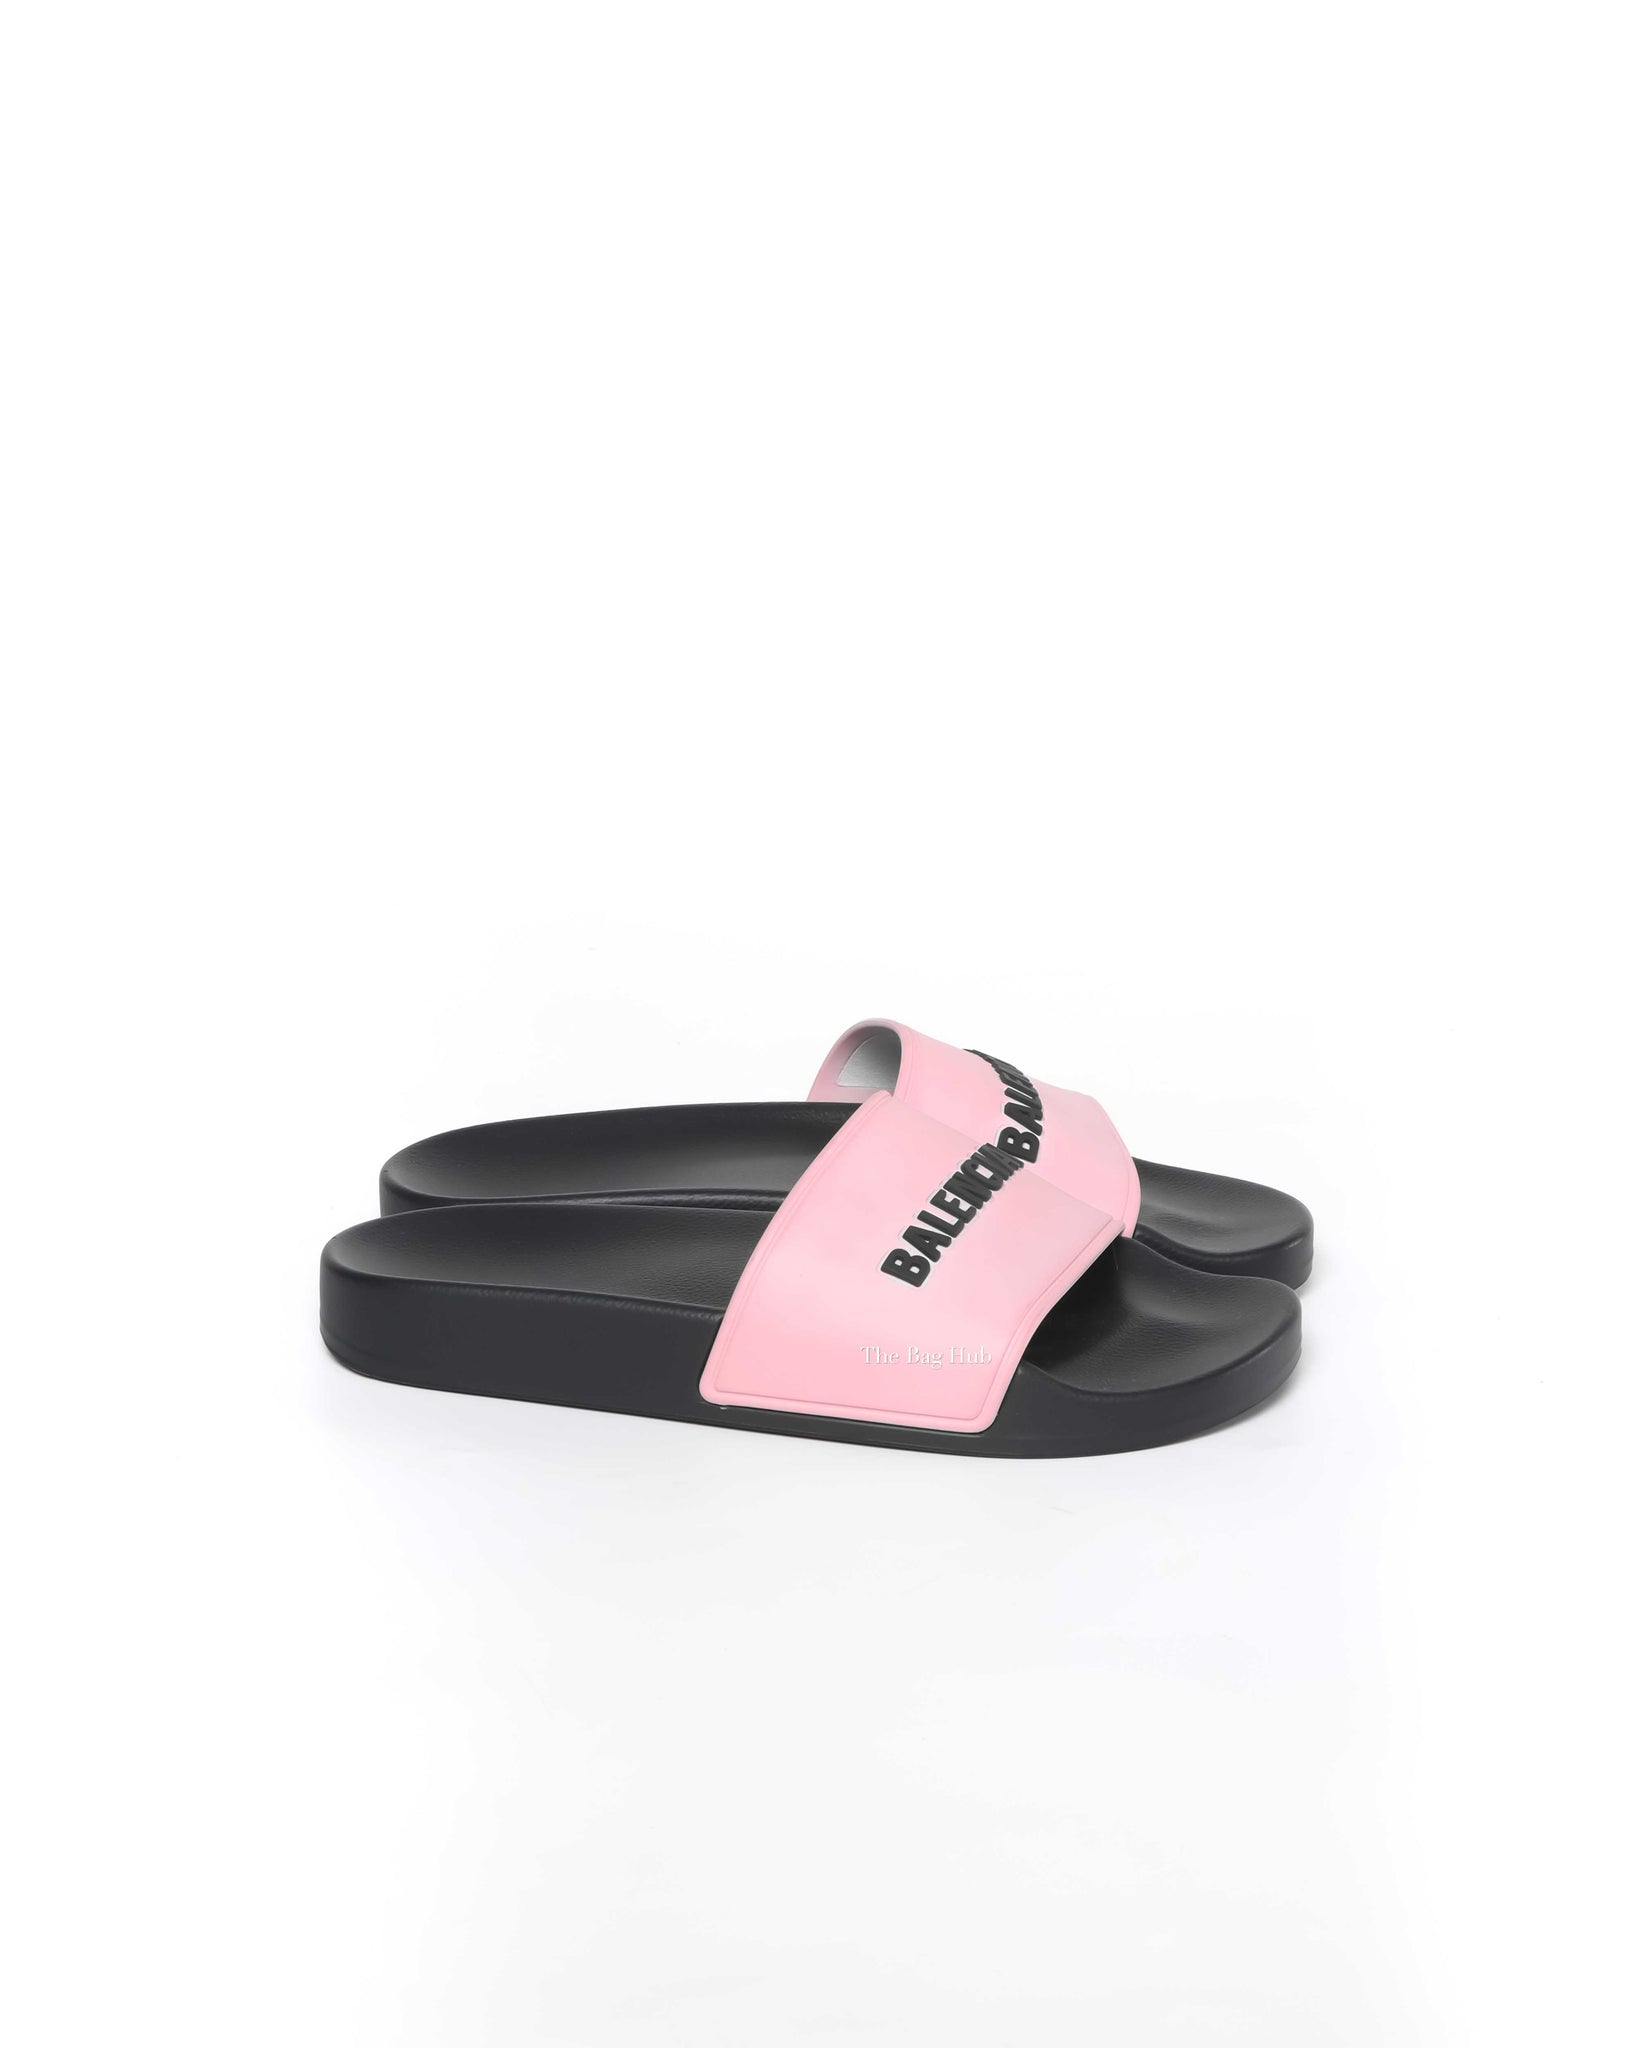 Balenciaga Black/Pink Rubber Women's Pool Slides Size 35-4